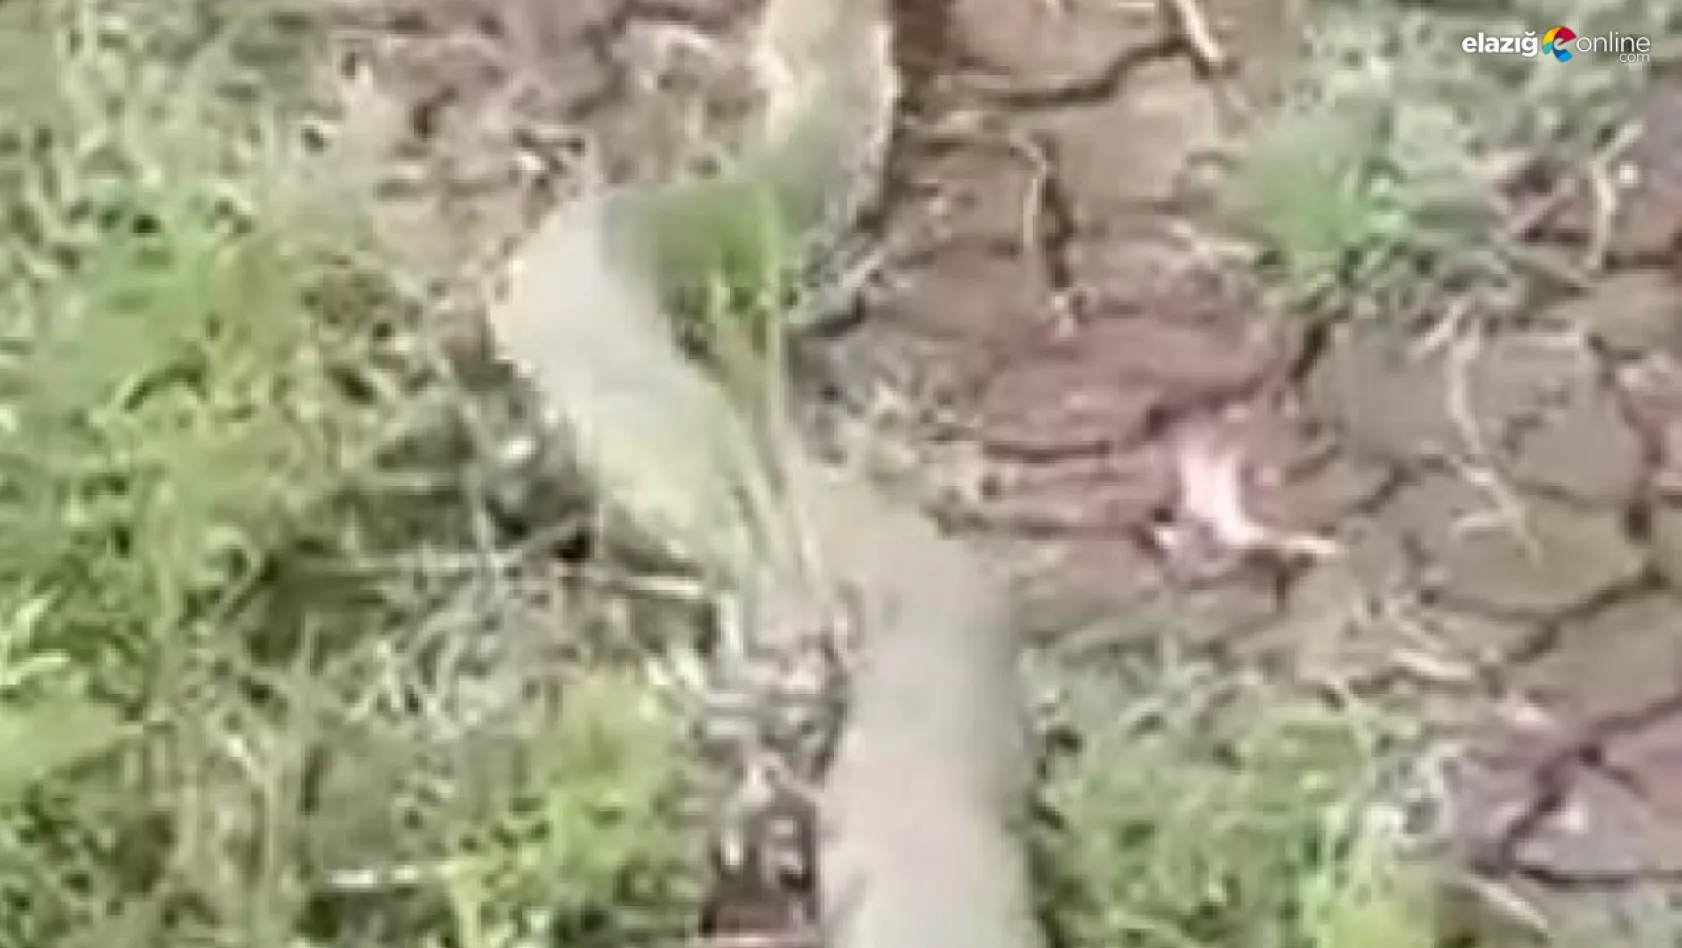 Türkiye'nin en zehirli yılan türü Elazığ'da görüntülendi!